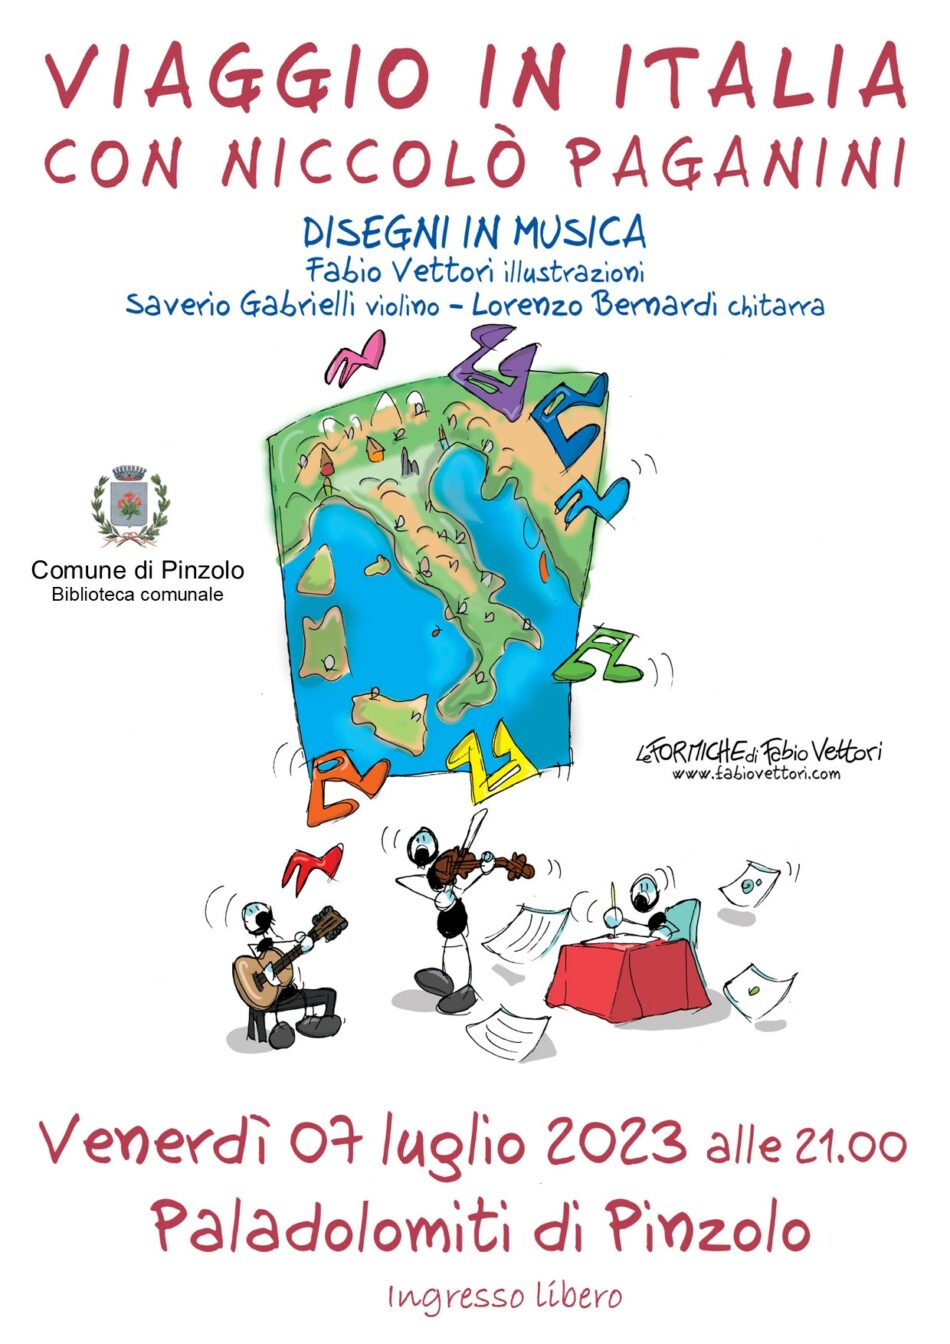 Paladolomiti Pinzolo Venerdì 7 luglio ore 21: Viaggio in Italia con Niccolò Paganini